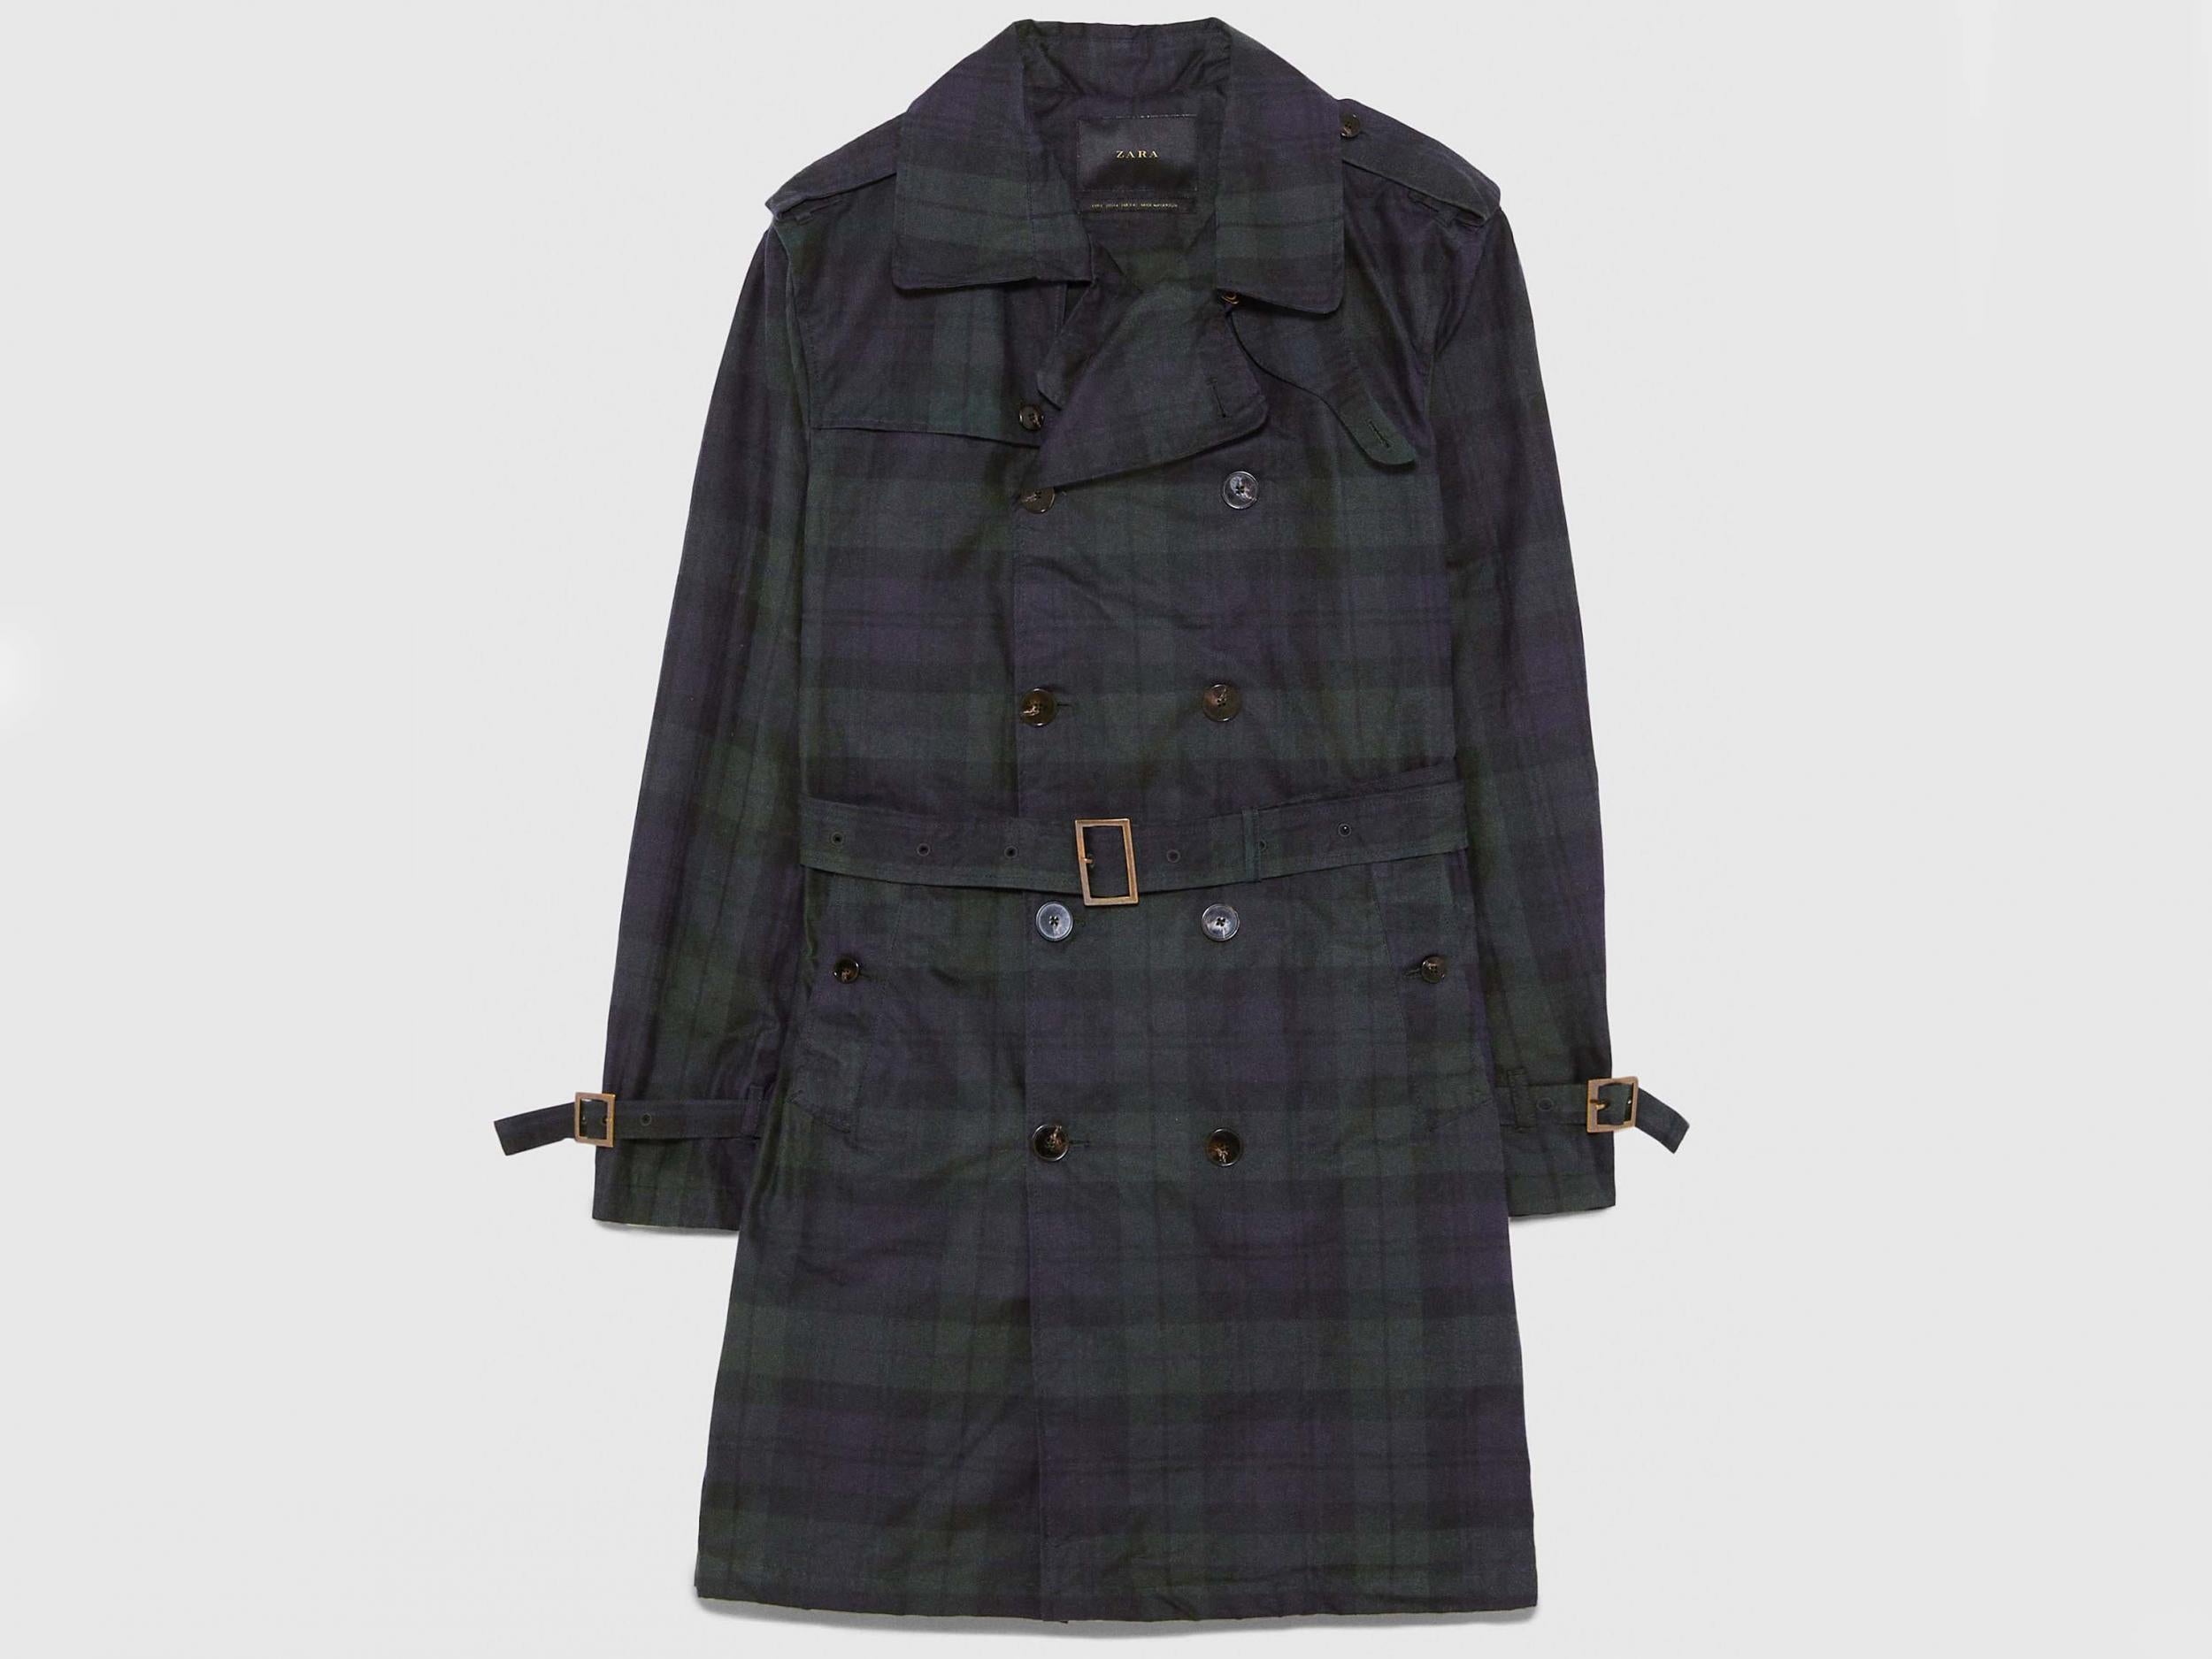 Waxed check trench coat, £149, Zara